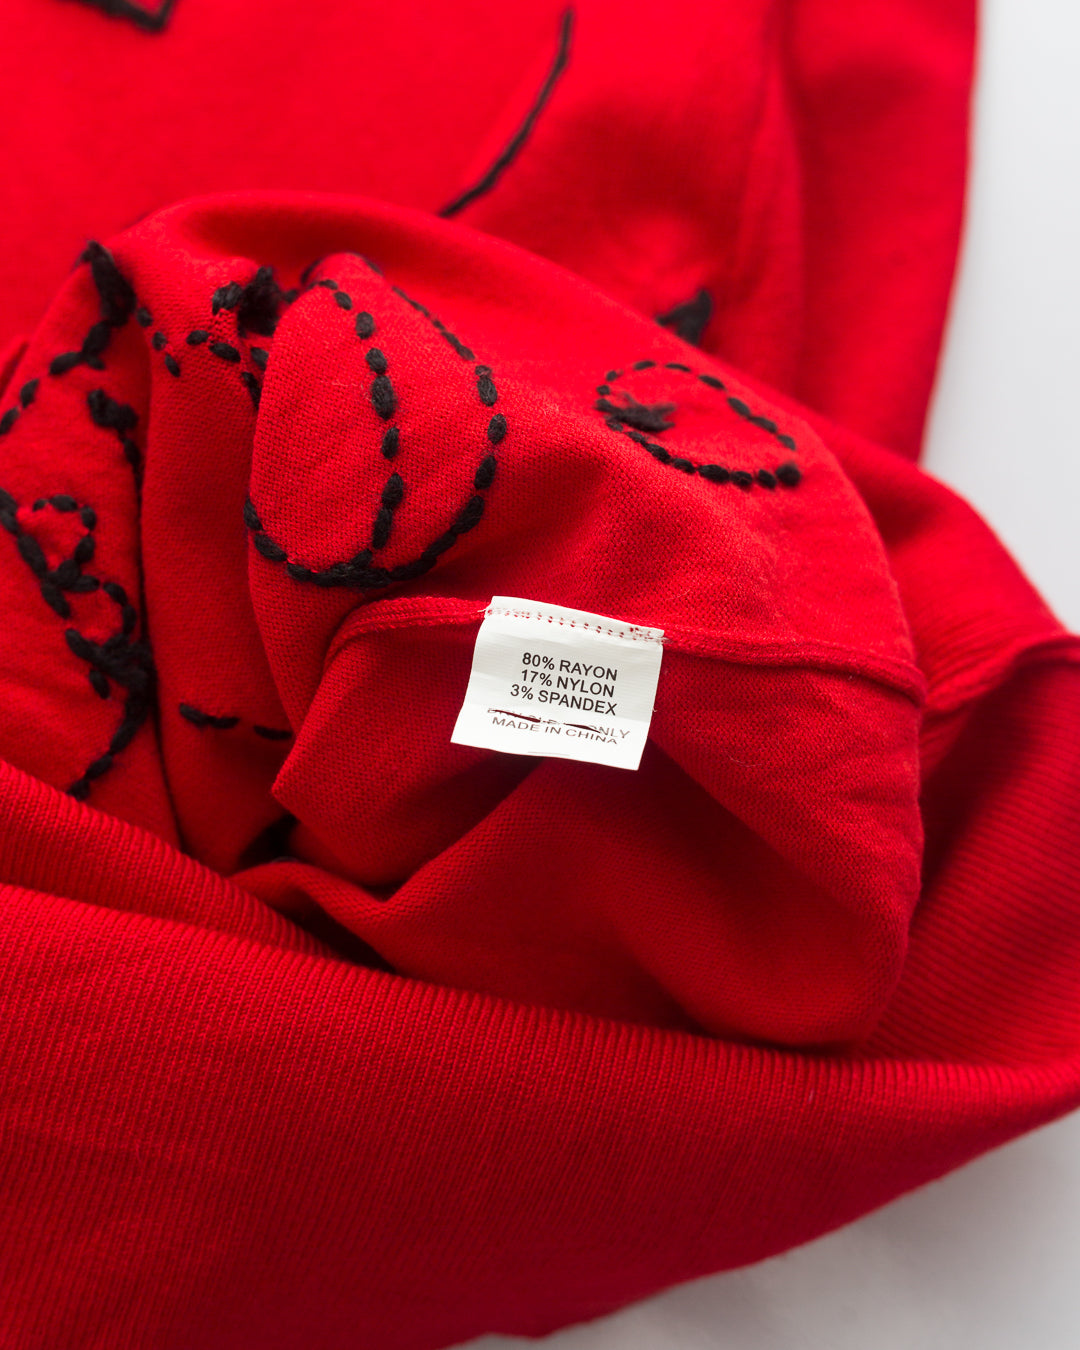 Diane von Furstenberg Embroidered Dress